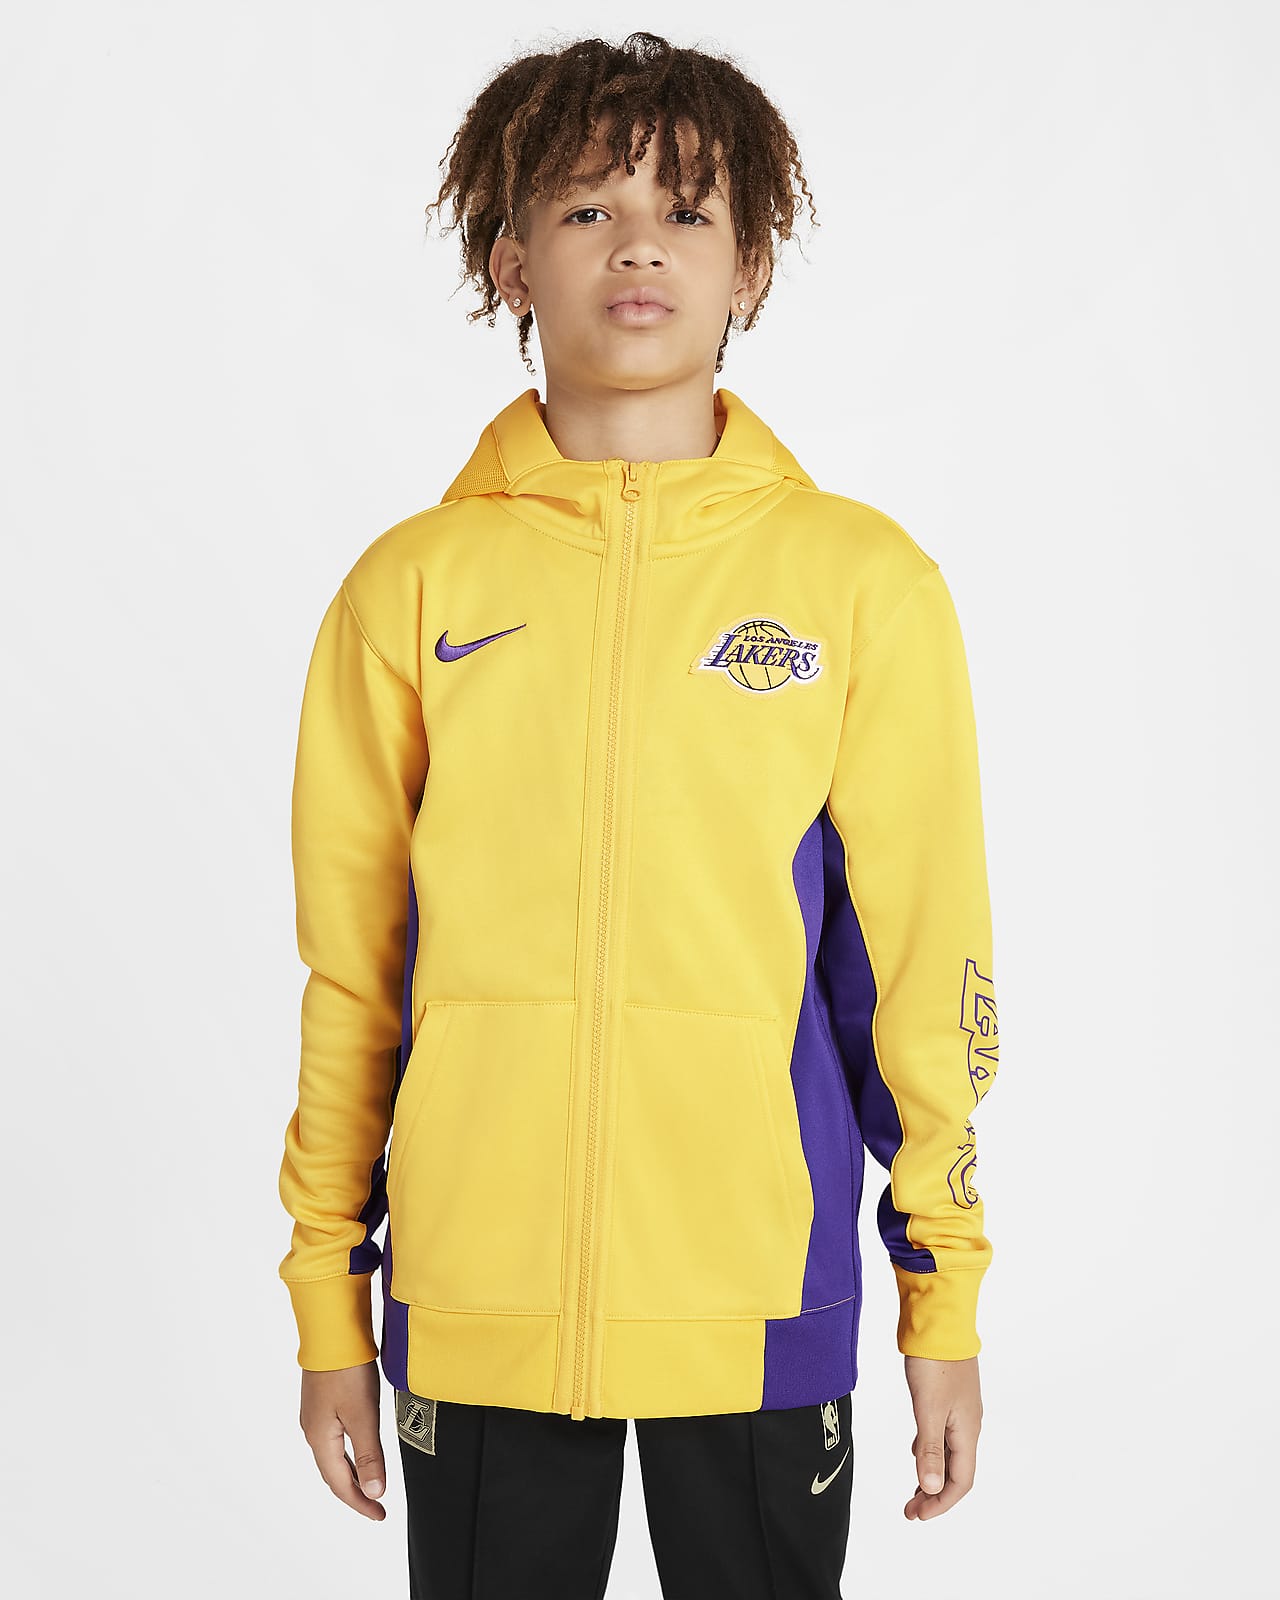 Μπλούζα με κουκούλα και φερμουάρ σε όλο το μήκος Nike Dri-FIT NBA Λος Άντζελες Λέικερς Showtime για μεγάλα παιδιά